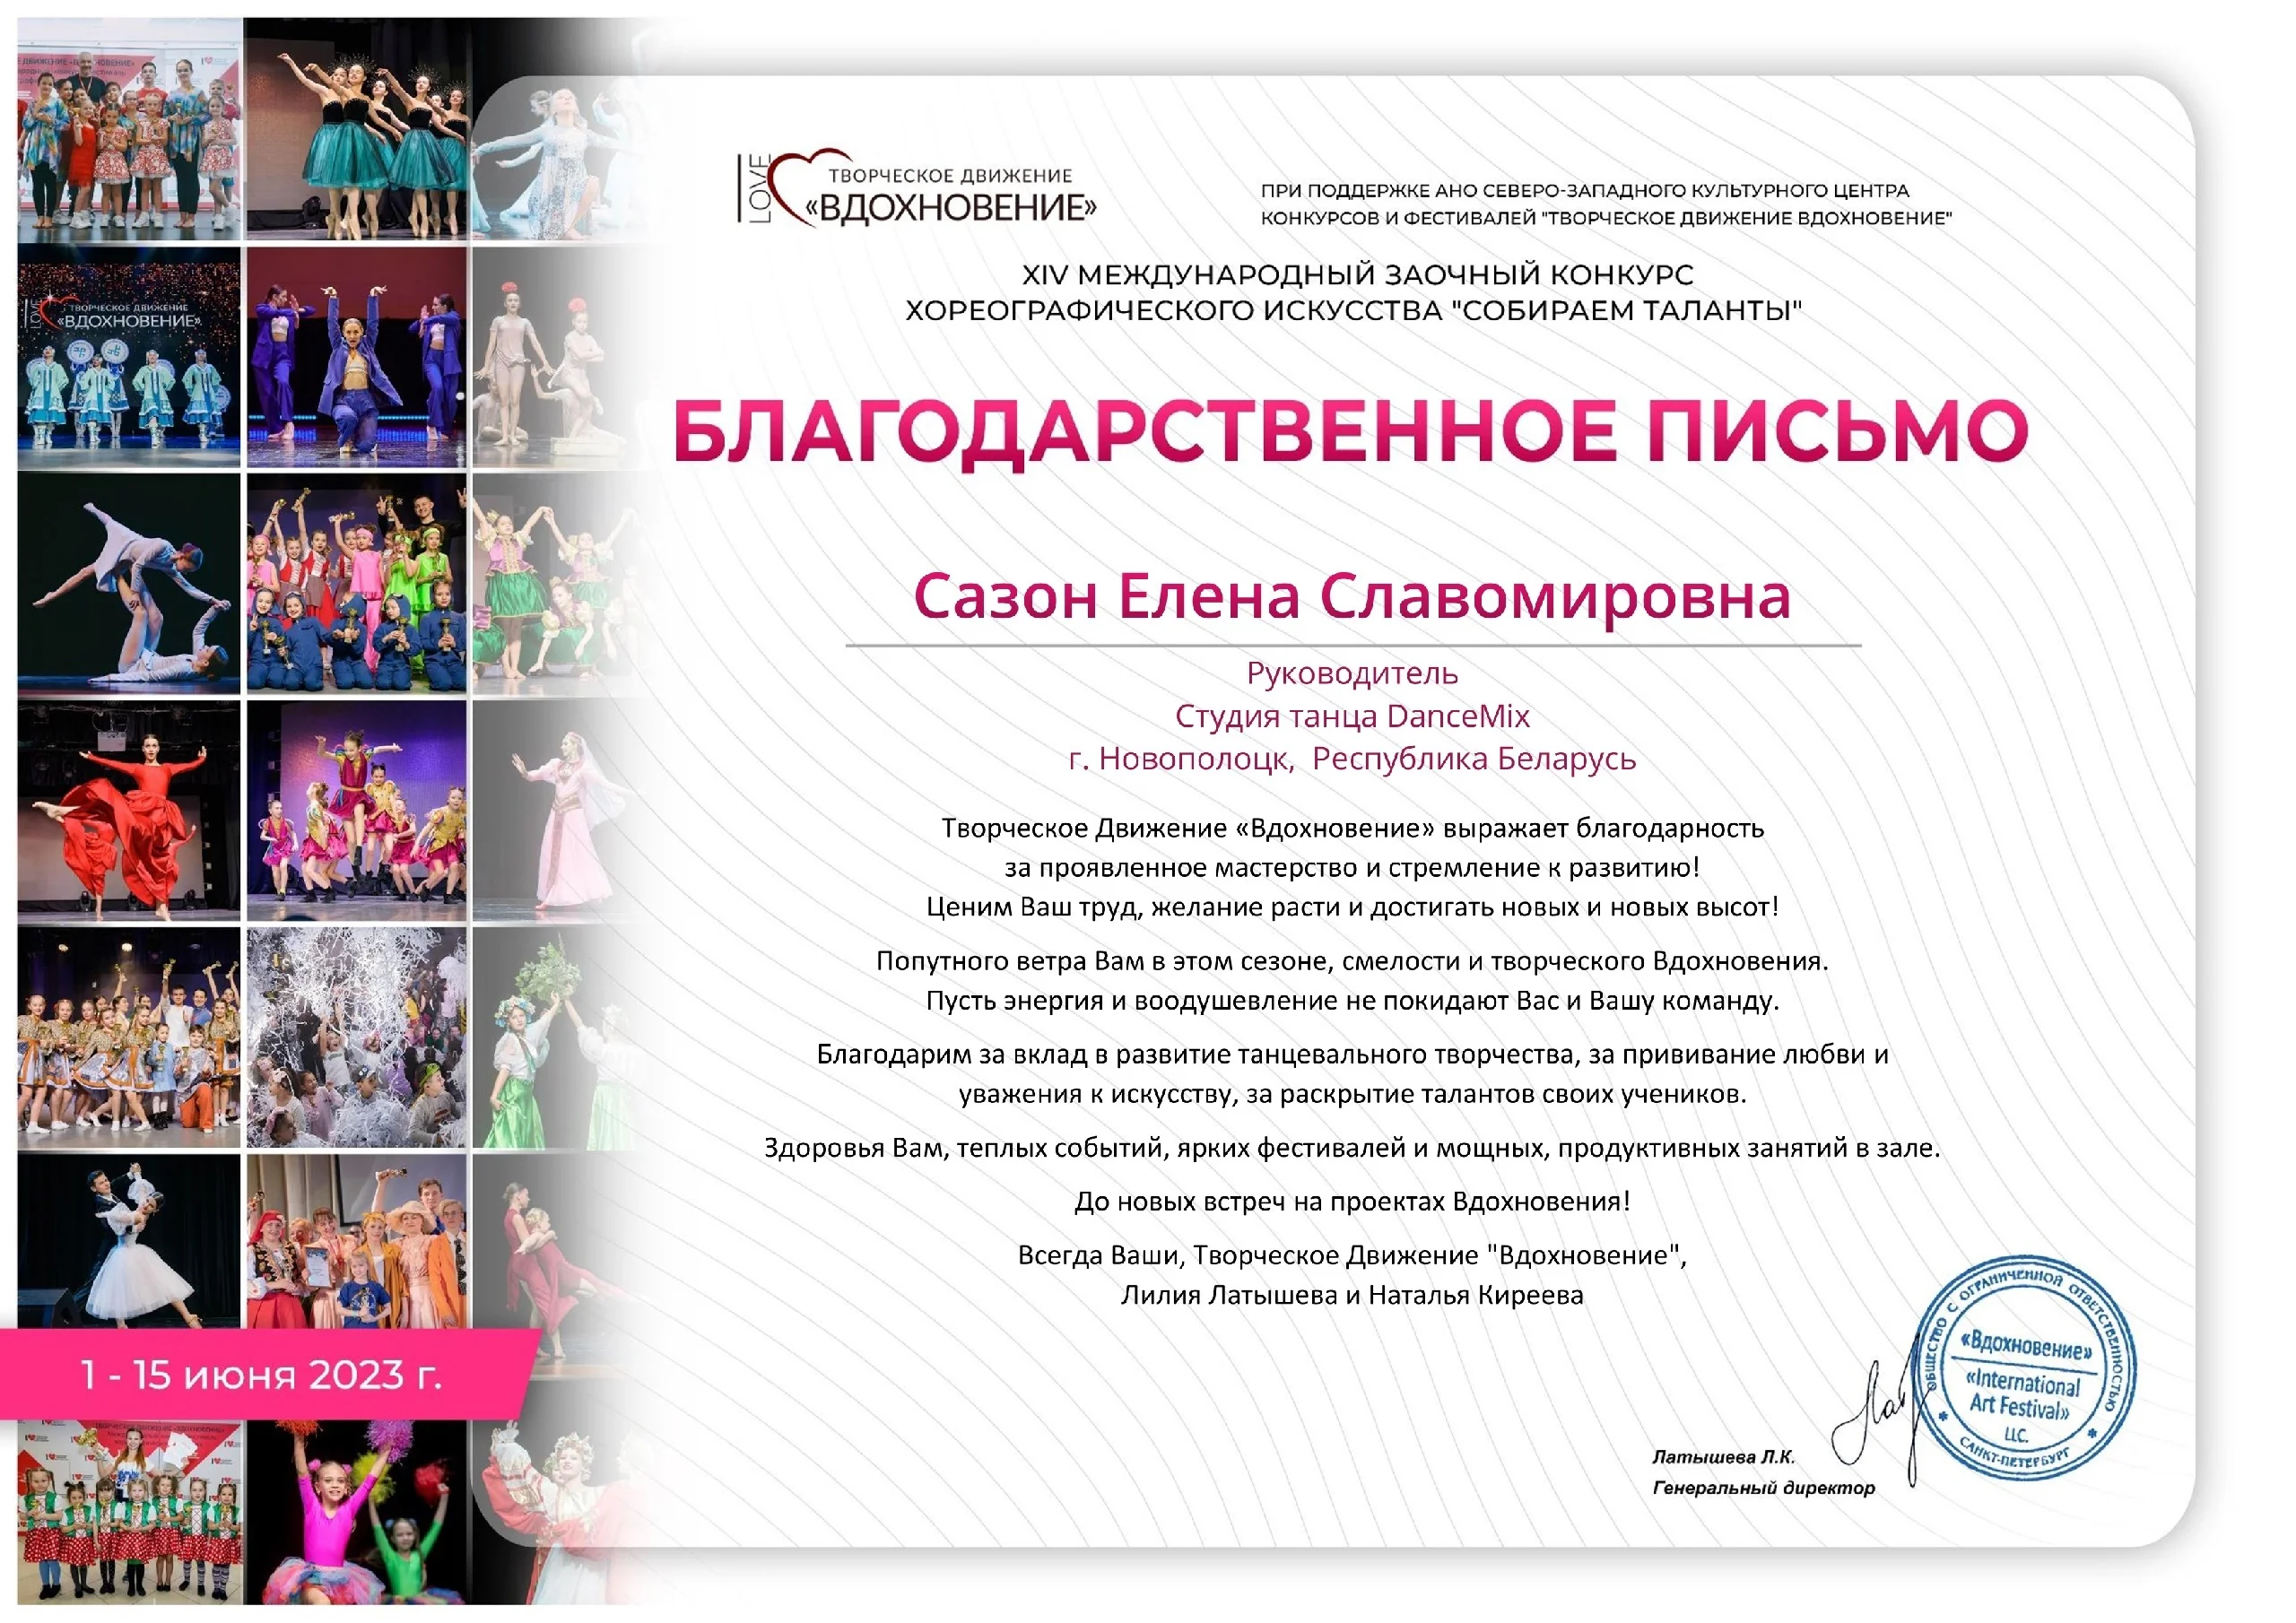 XIV Международный заочный конкурс хореографического искусства «Собираем таланты»